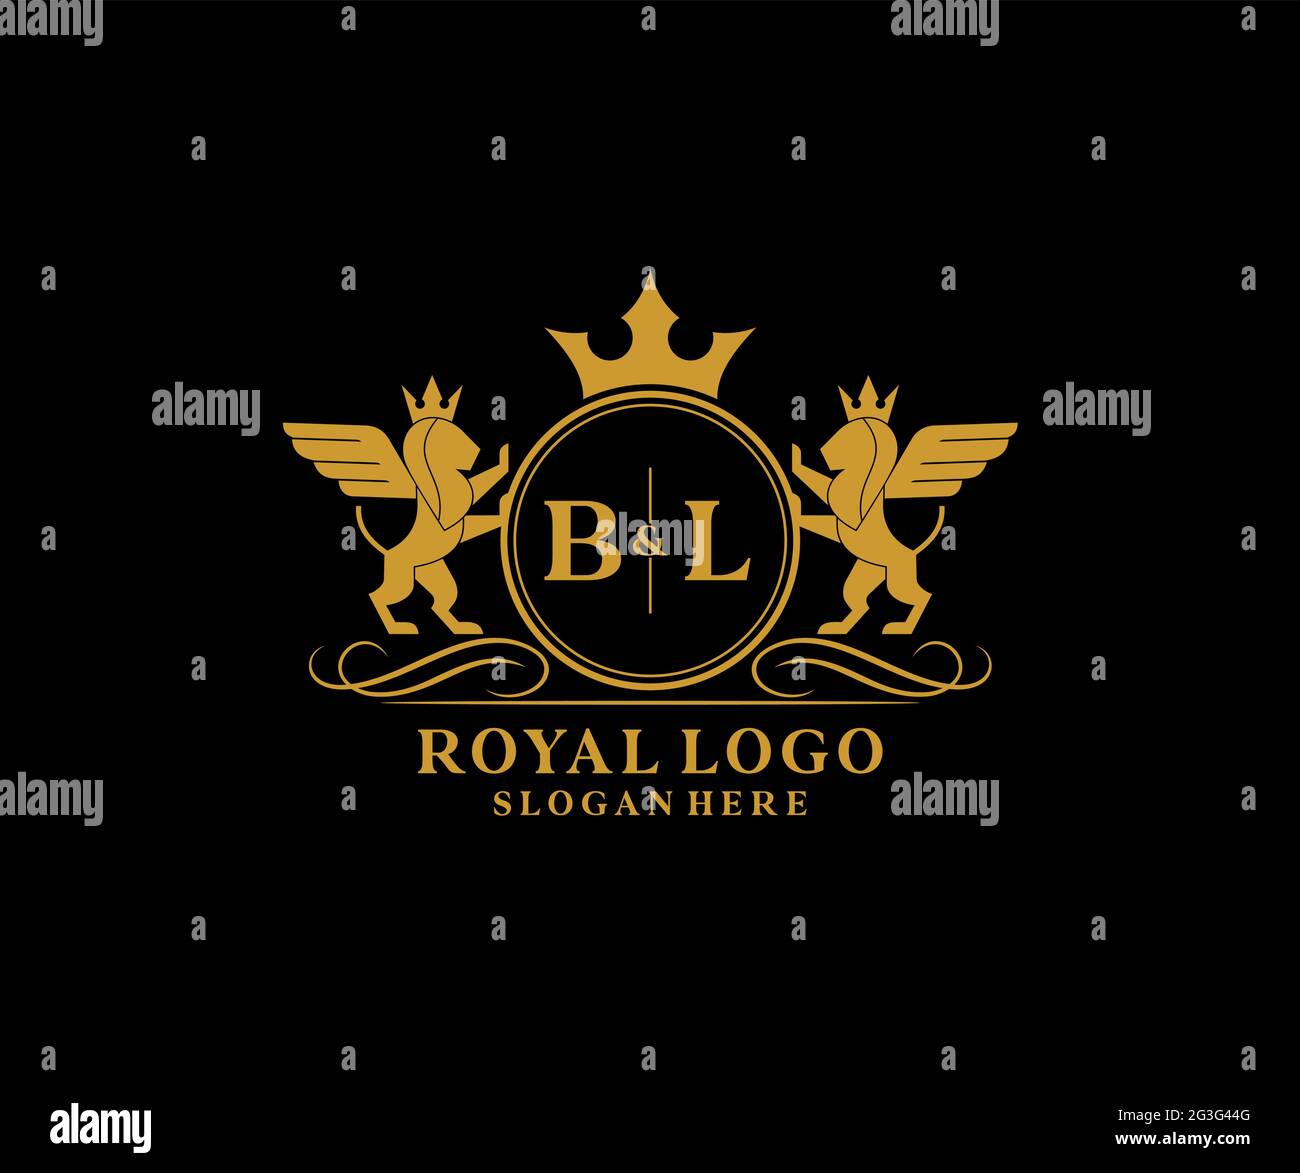 BL Buchstabe Lion Royal Luxury heraldic, Crest Logo Vorlage in Vektorgrafik für Restaurant, Royalty, Boutique, Cafe, Hotel, Heraldik, Schmuck, Mode und Stock Vektor